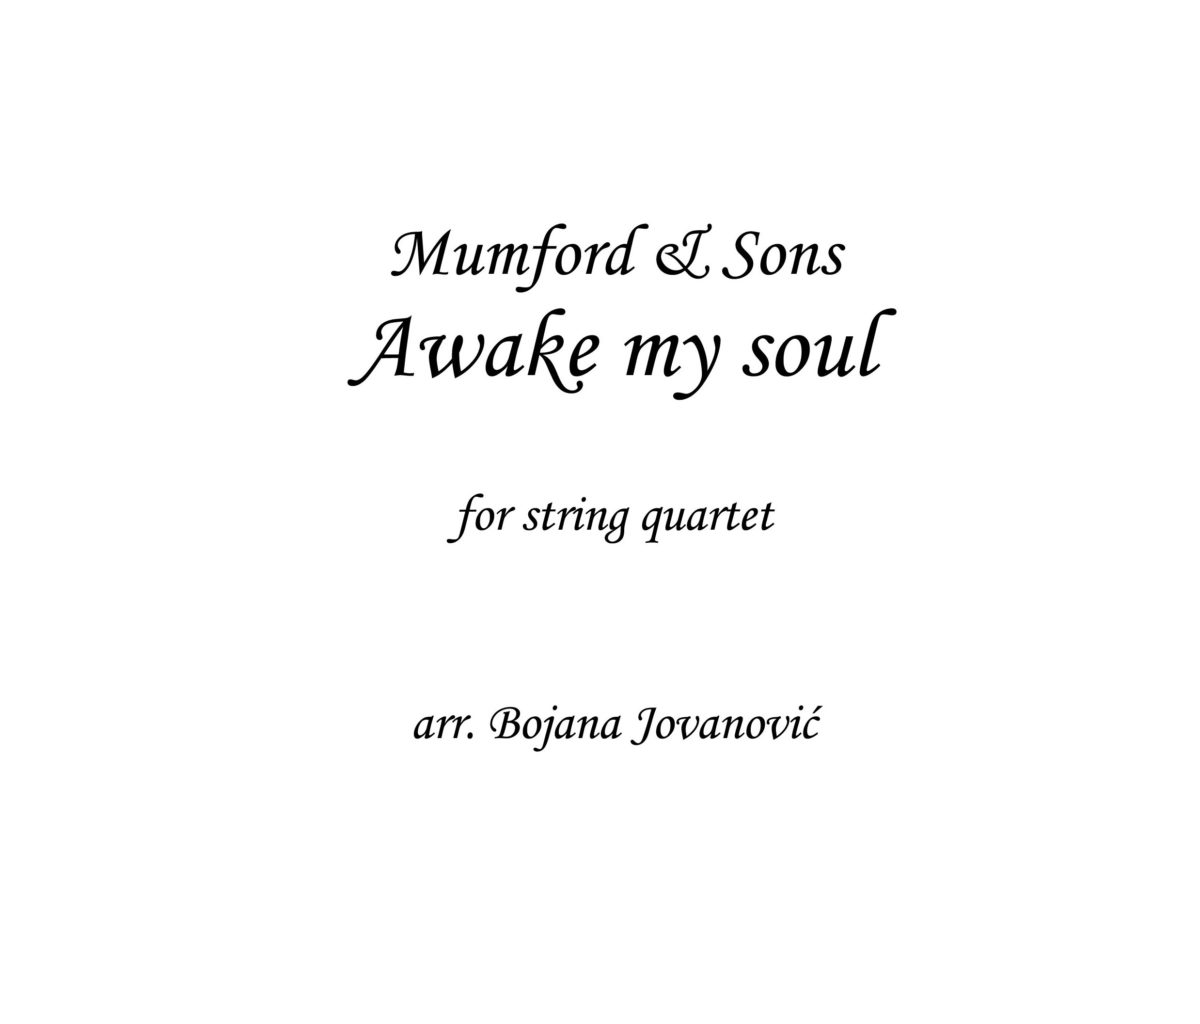 Awake my soul (Mumford and Sons) - Sheet music